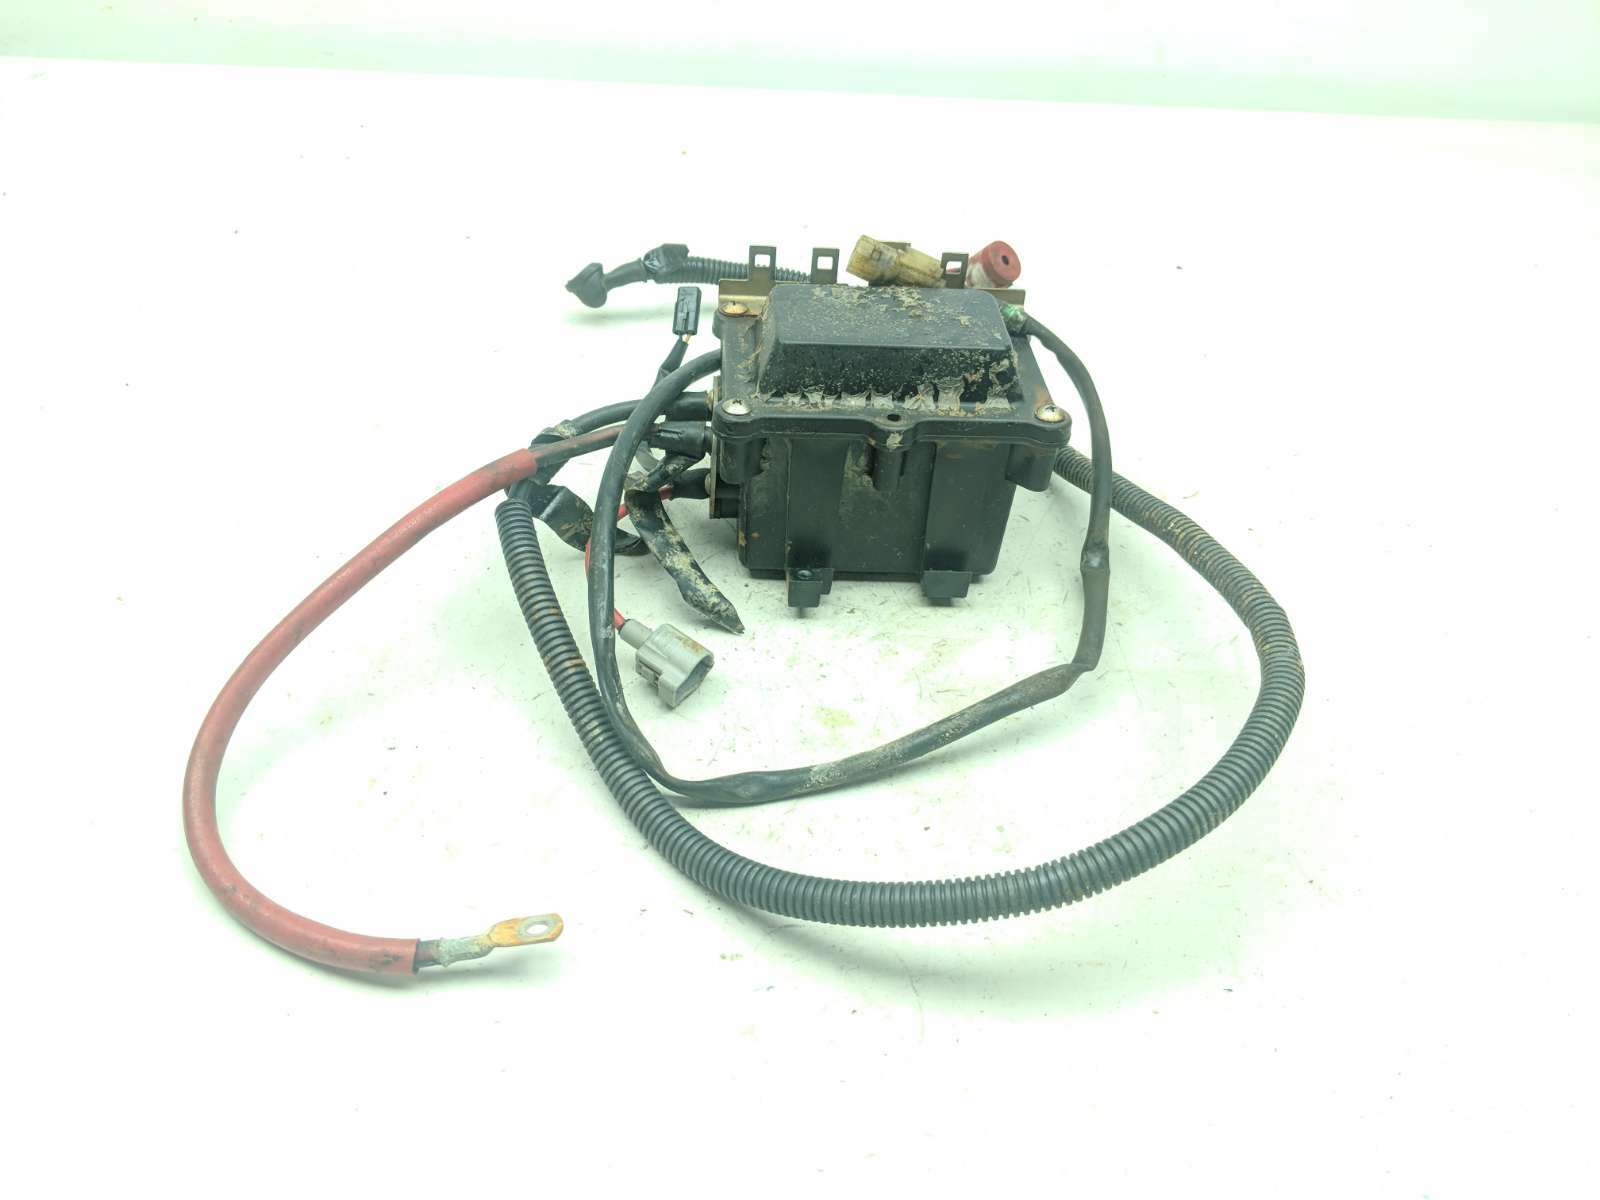 06 Honda Aquatrax F12-X Starter Relay Solenoid Electrical Box